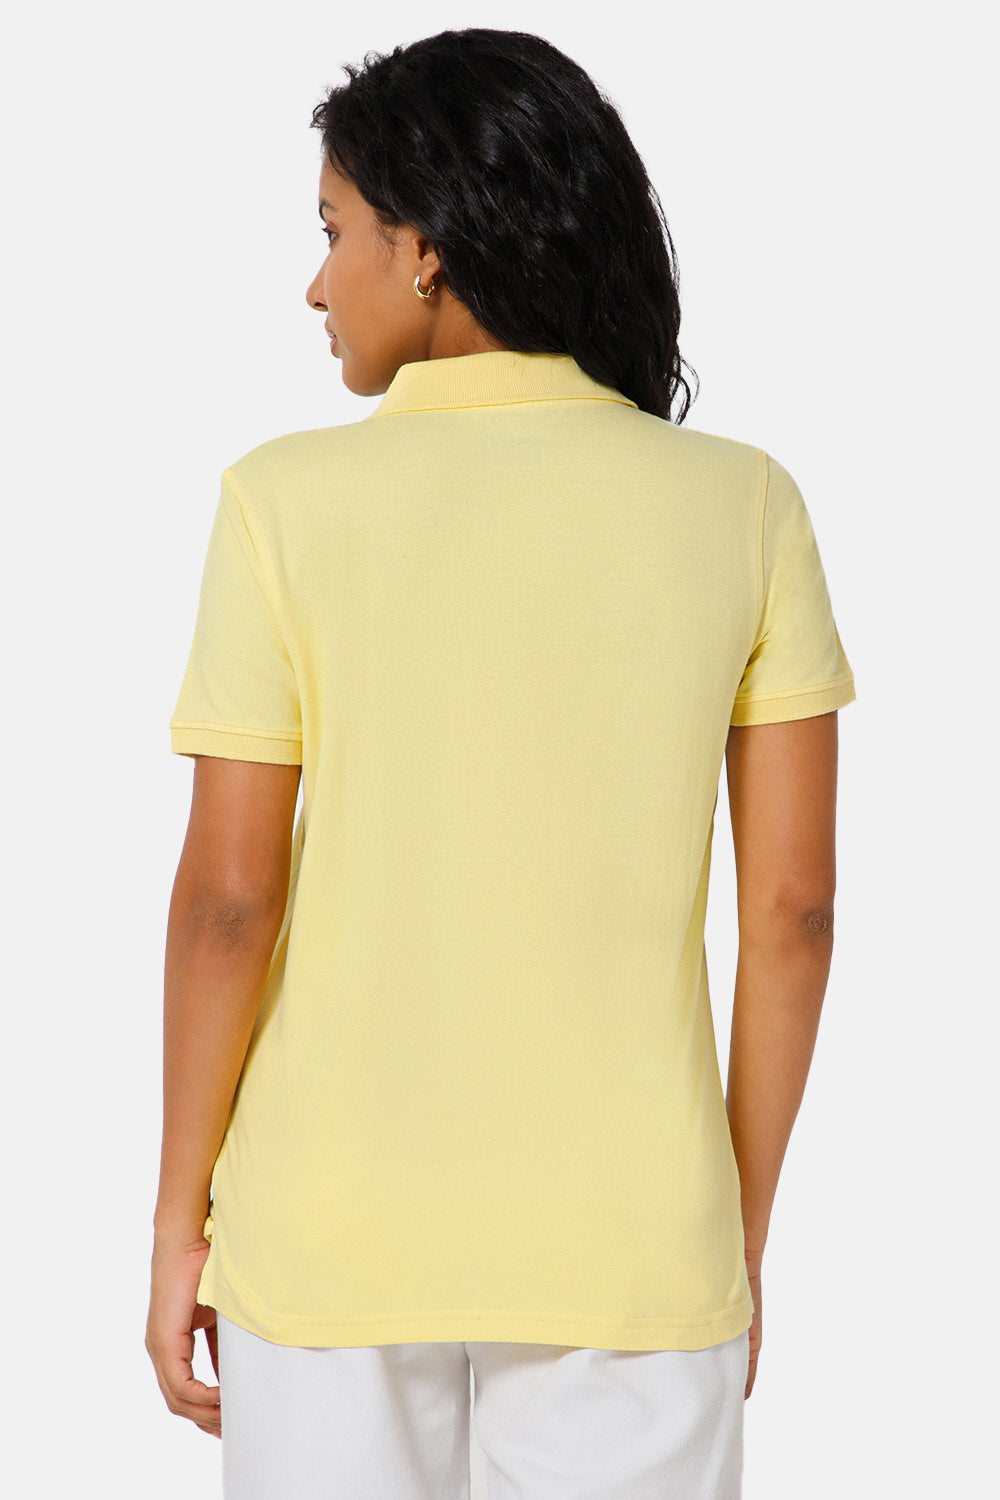 Jusperf Women Half Sleeve Polo Neck T-shirt  - Peach - SJD3